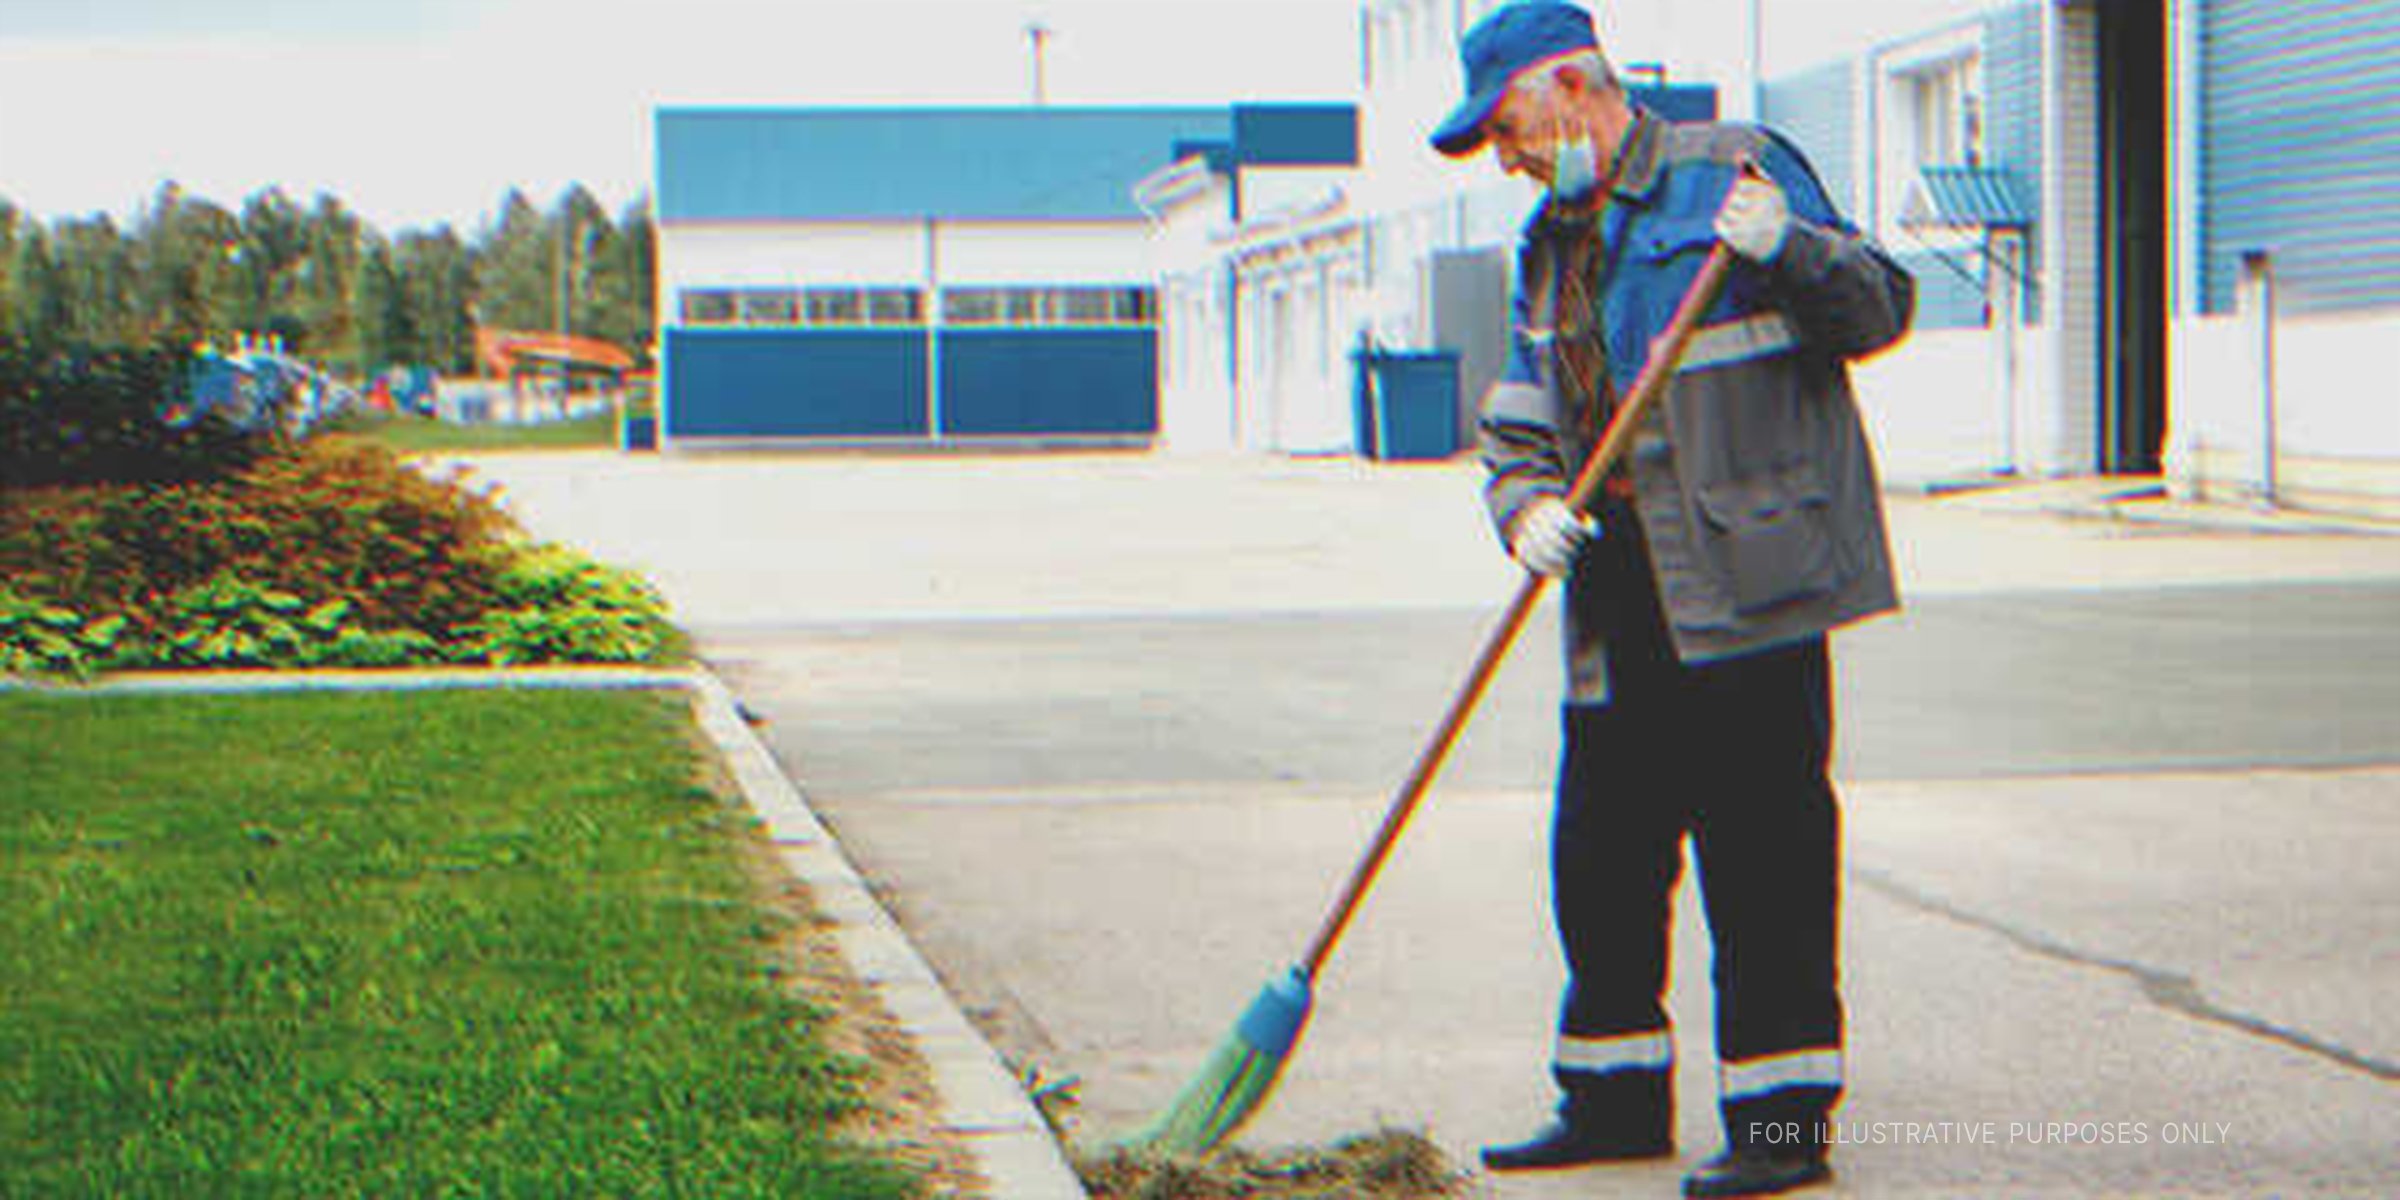 Elderly janitor sweeping outside an office | Source: Shutterstock